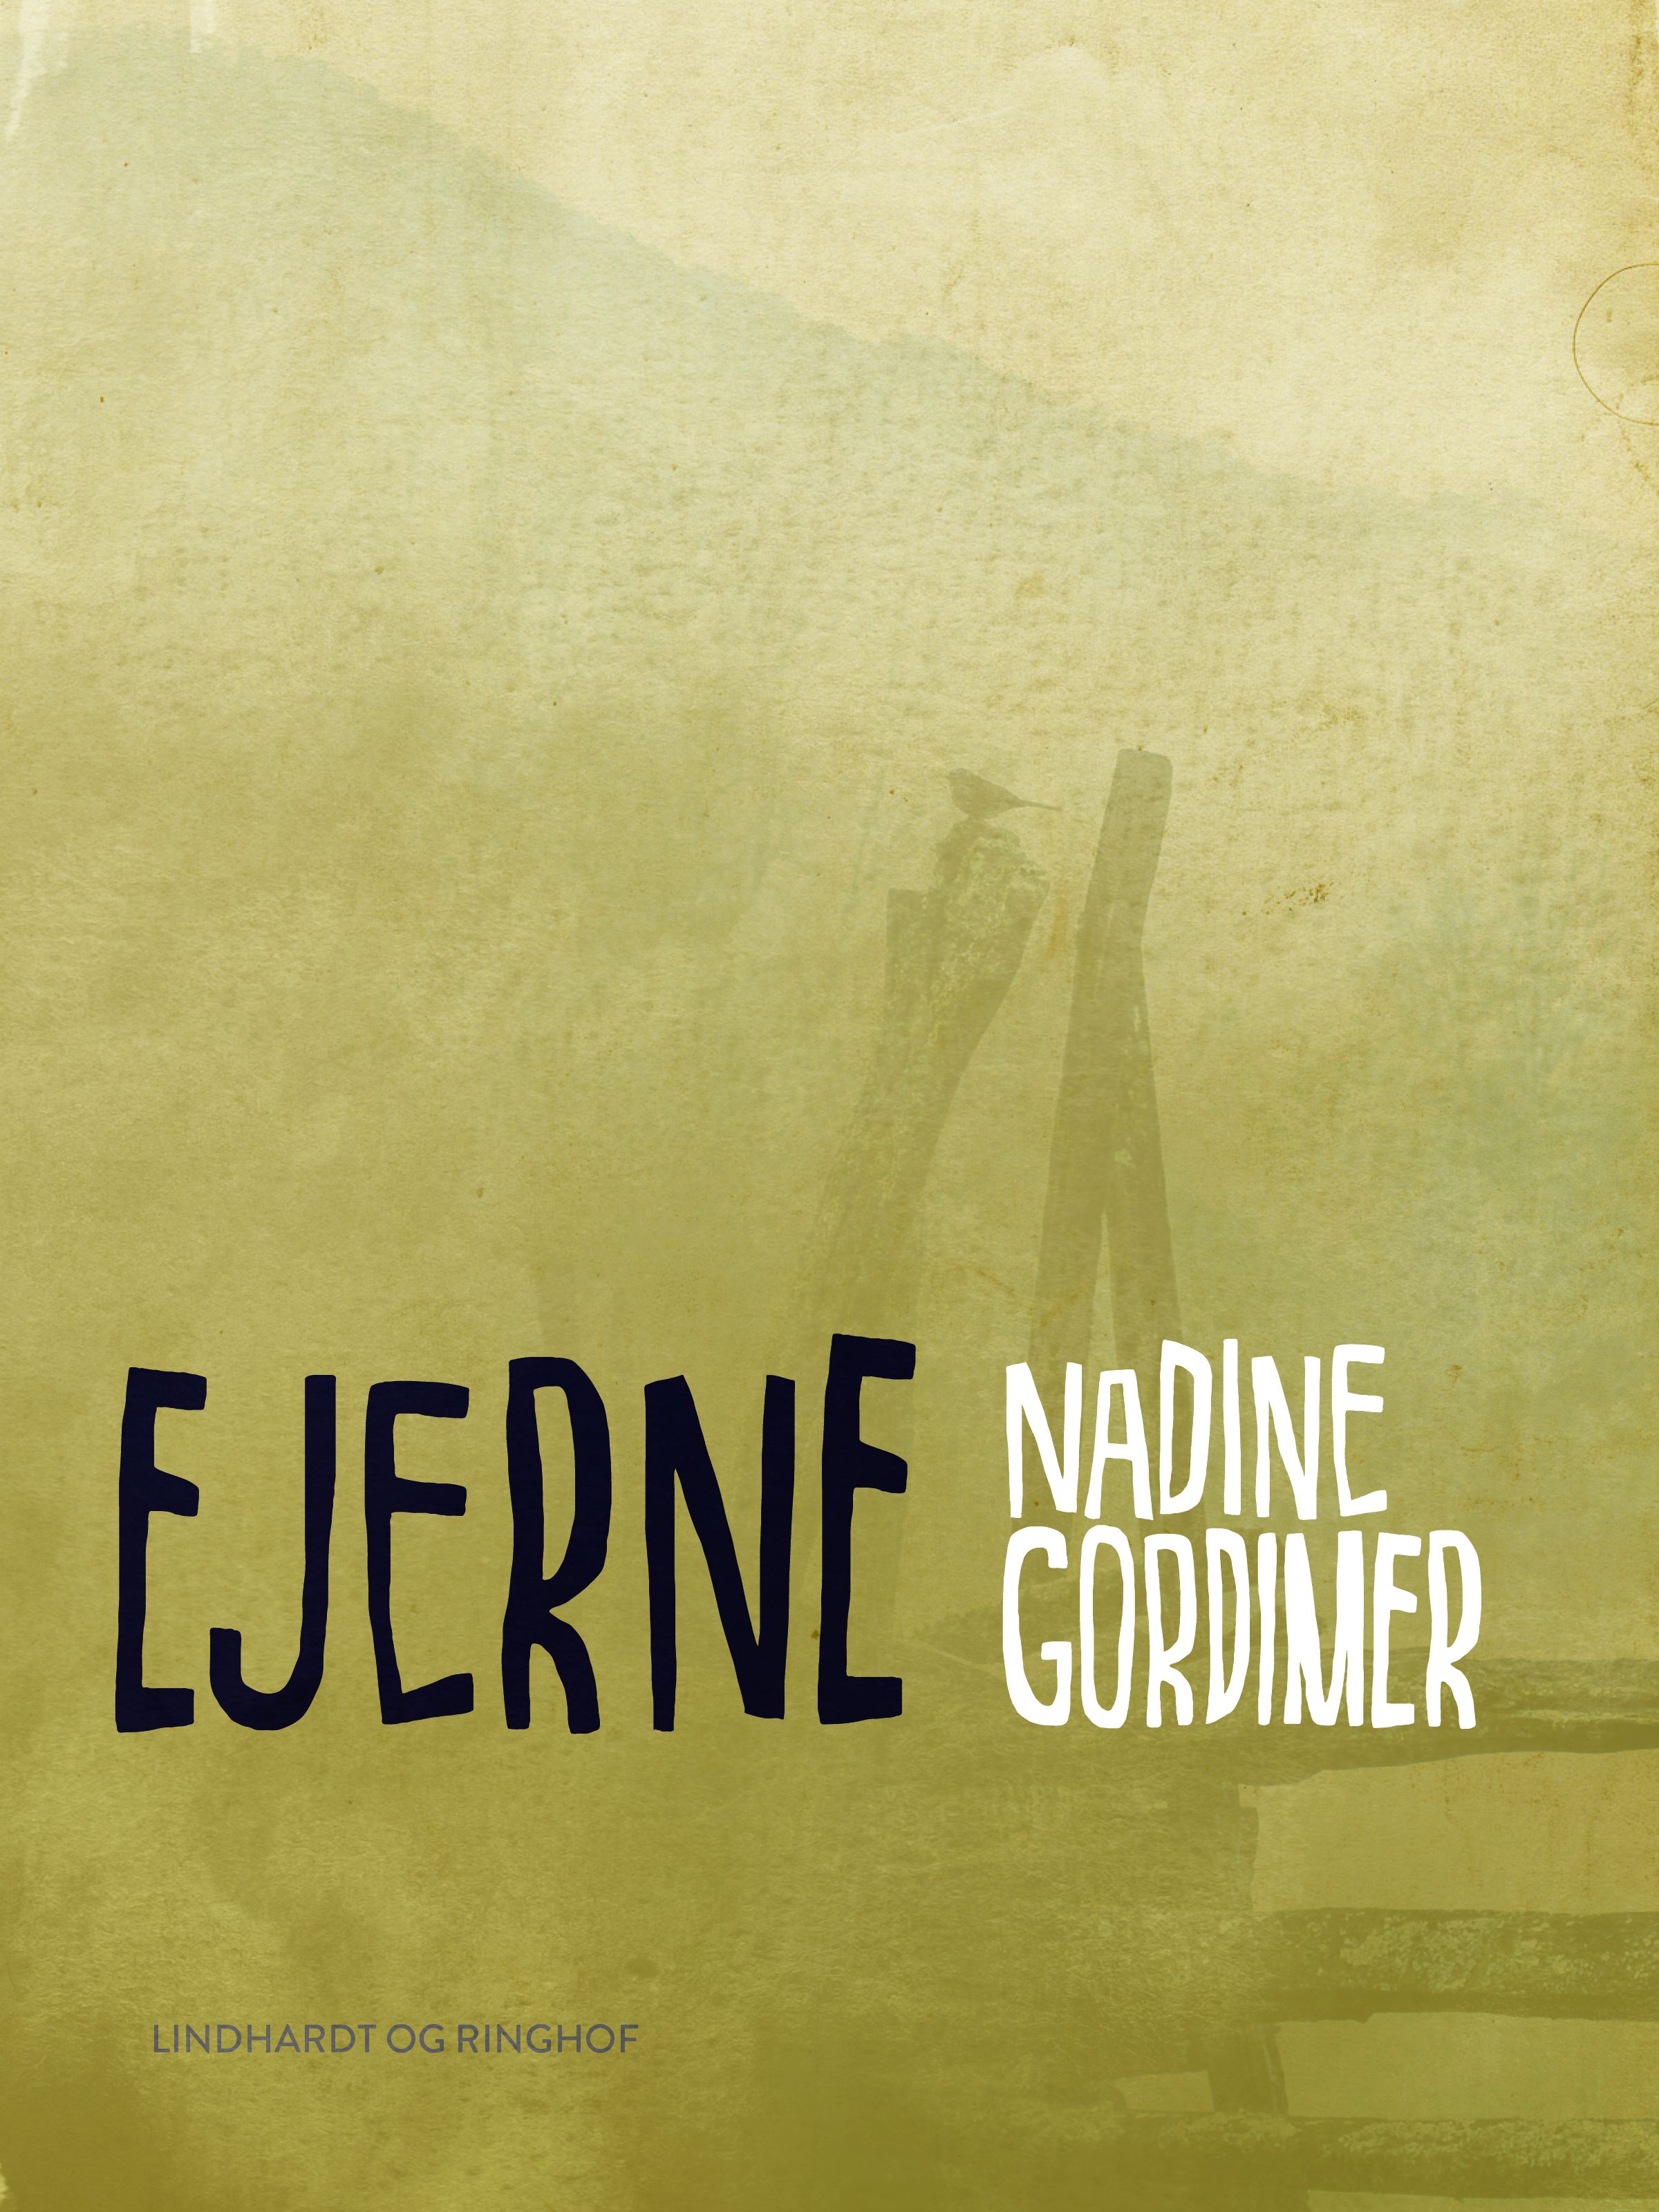 Ejerne, ljudbok av Nadine Gordimer